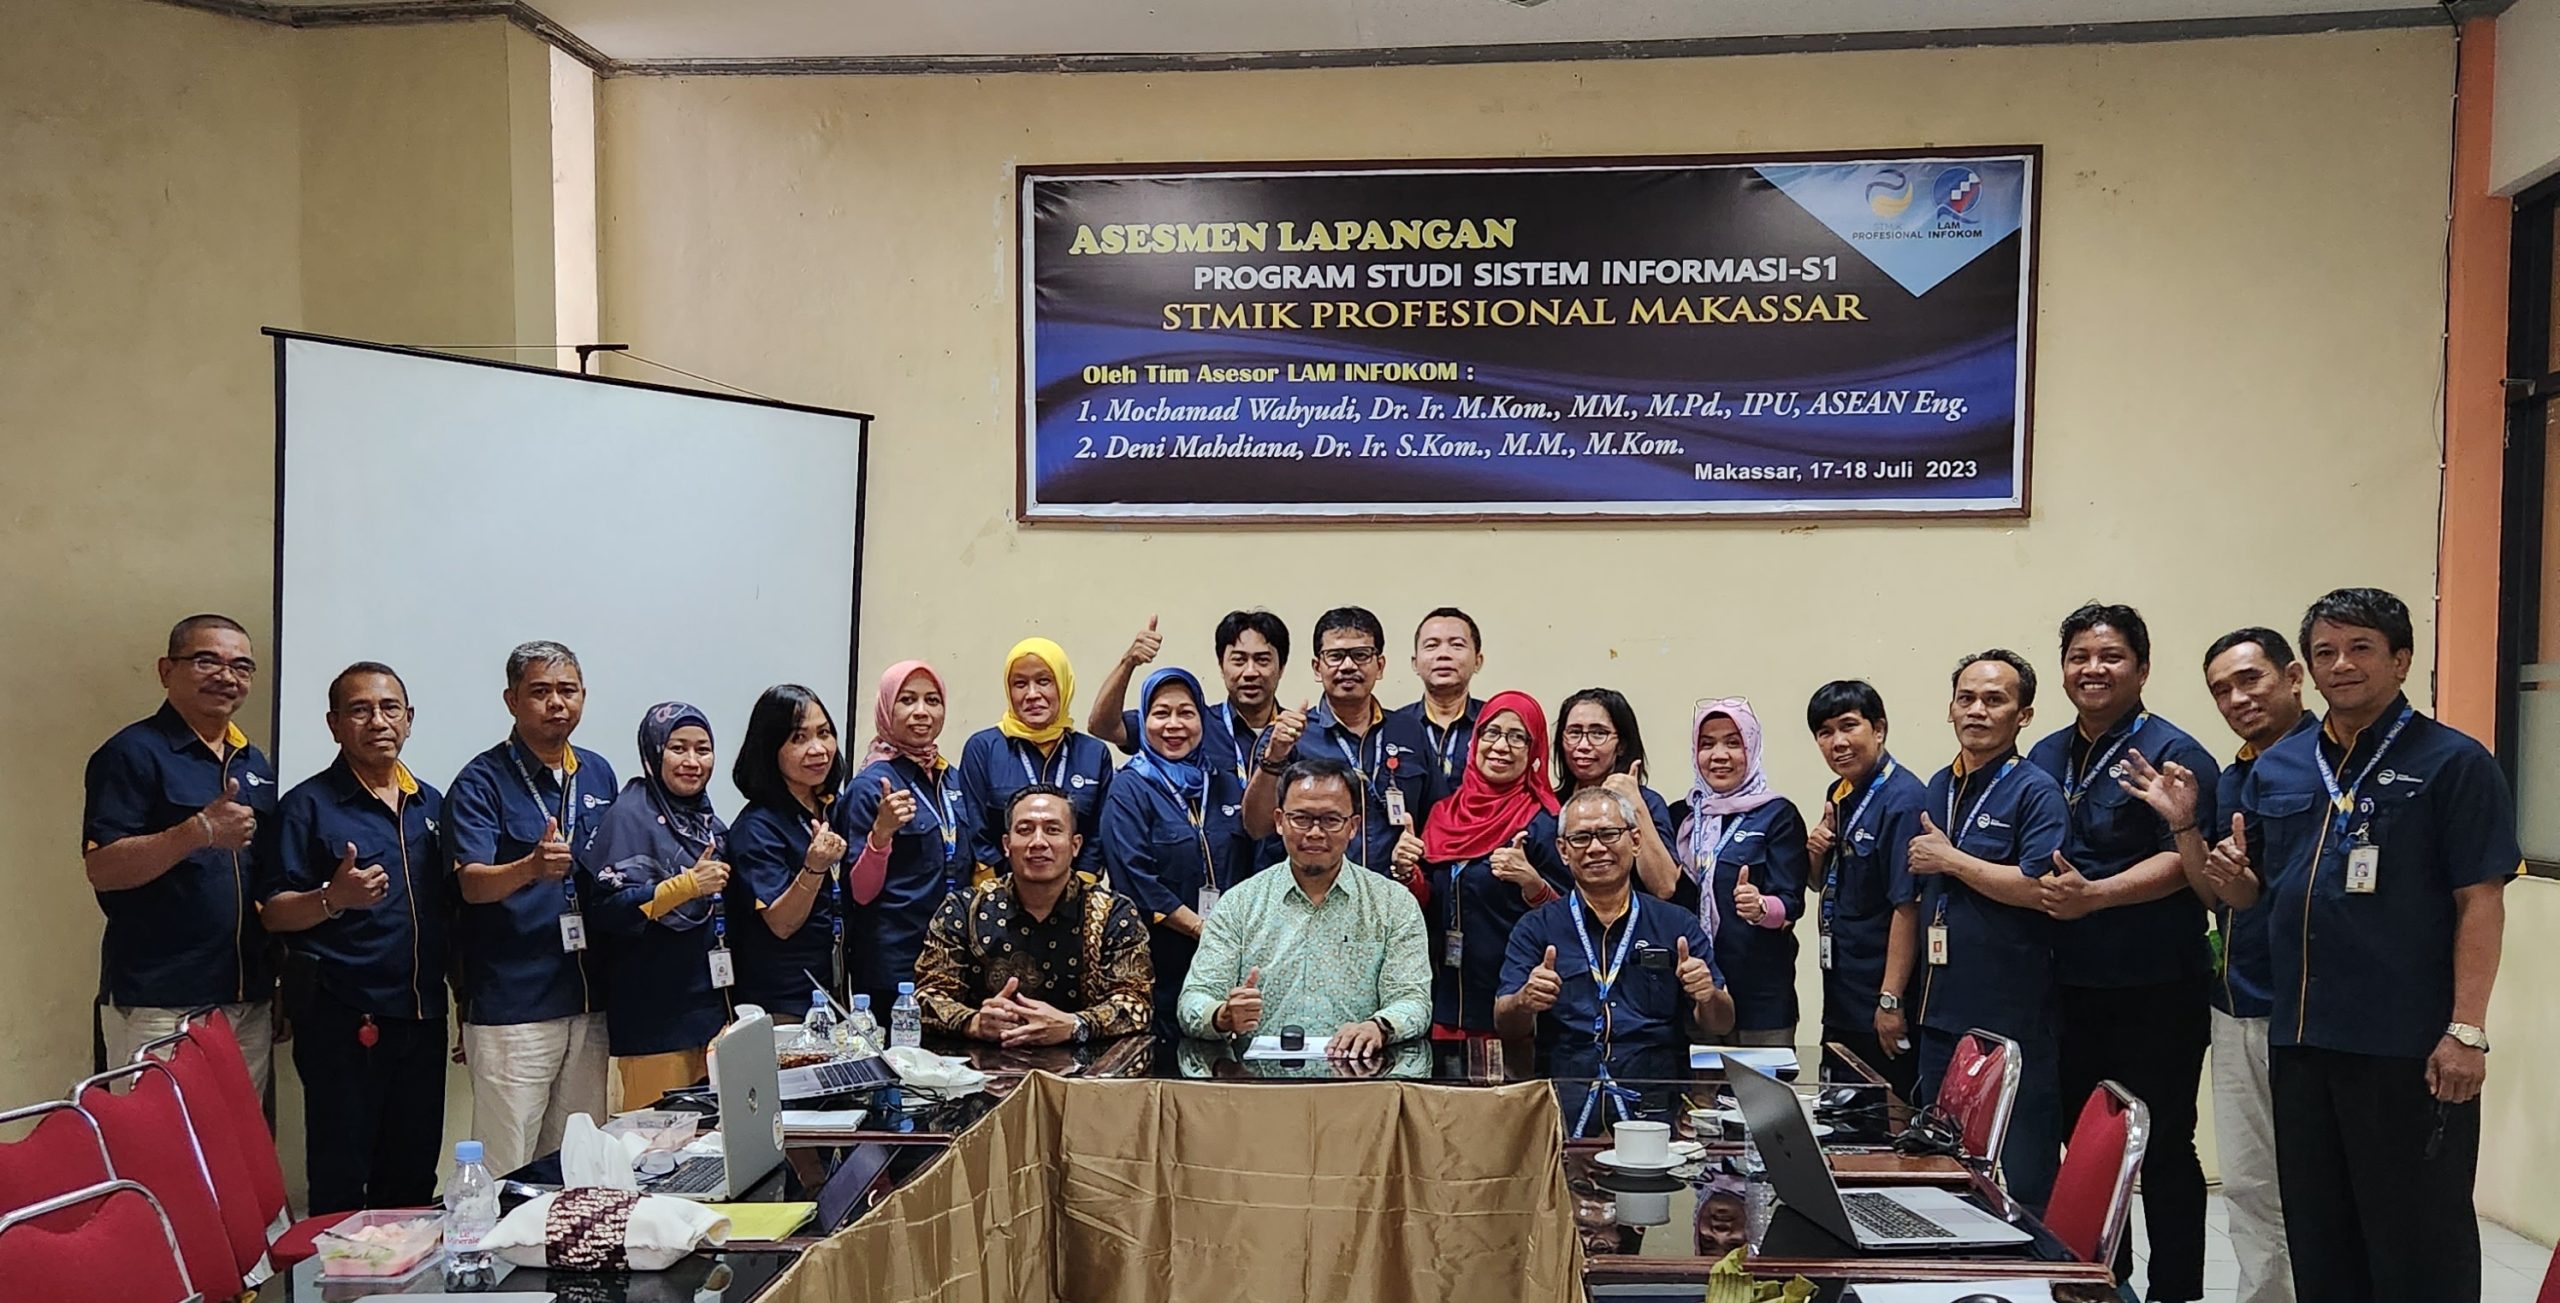 Prestasi Gemilang: Prodi Sistem Informasi dan Manajemen Informatika STMIK Profesional Makassar Raih Akreditasi “Baik Sekali” dari LAM INFOKOM